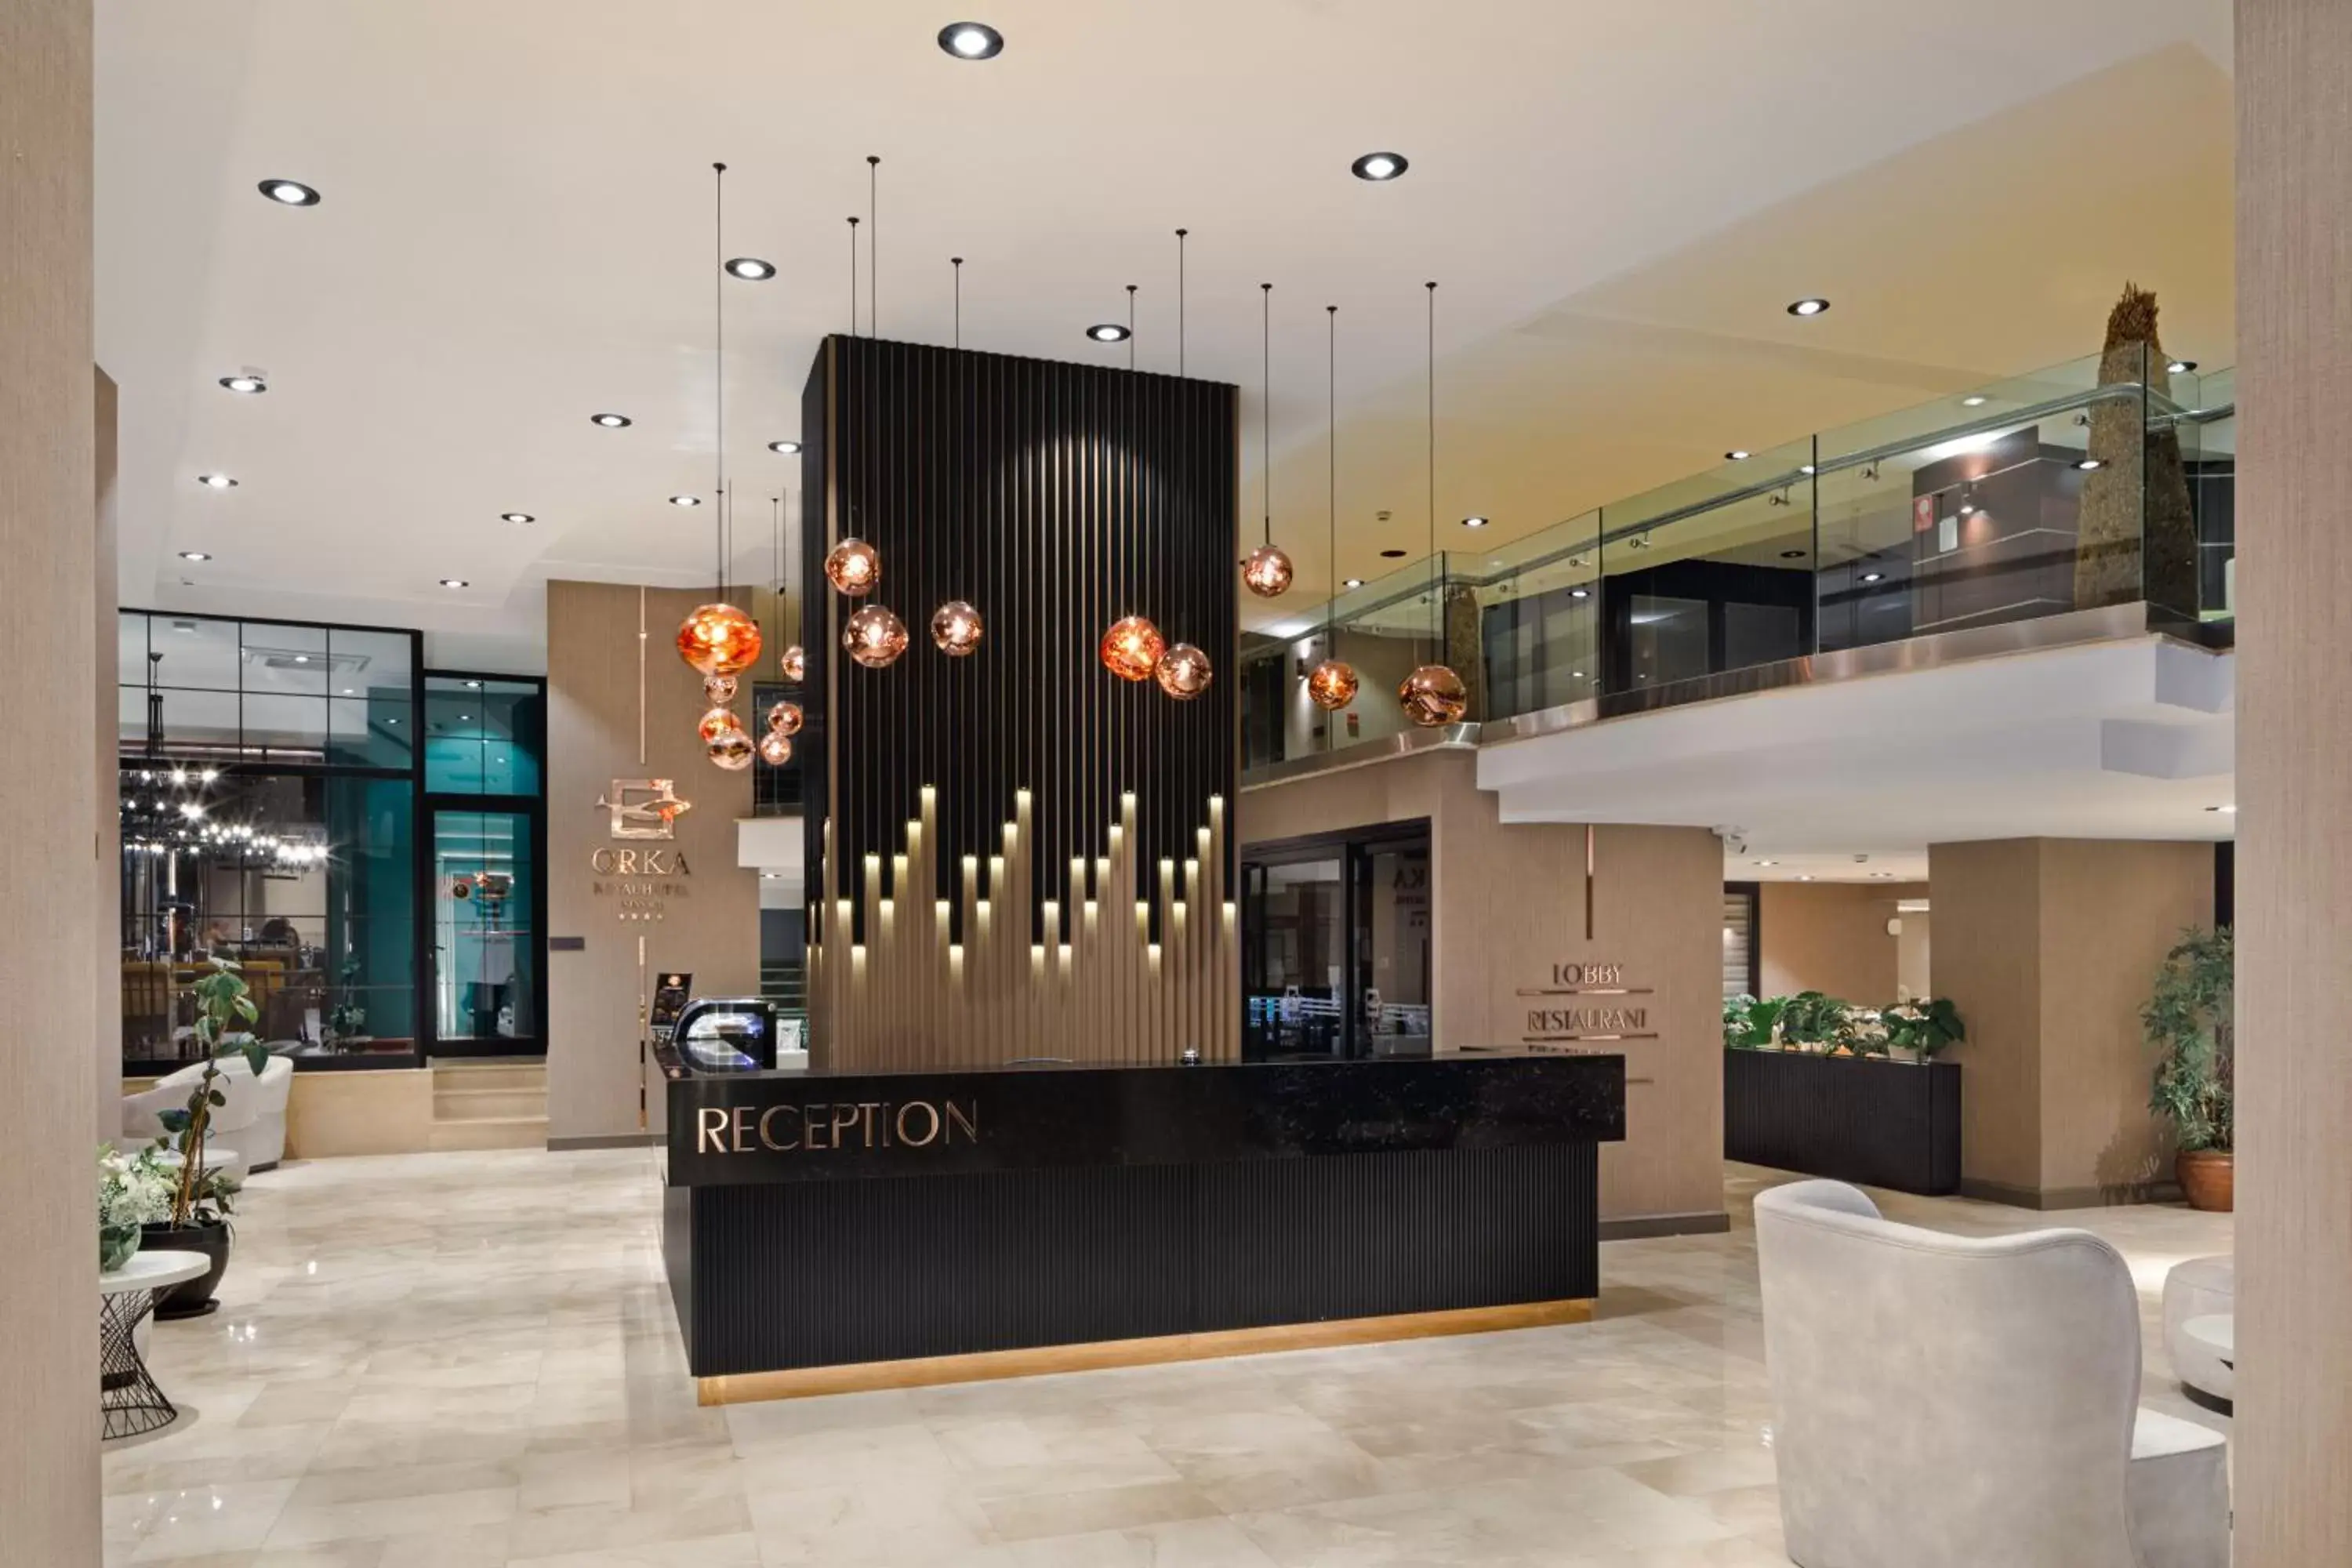 Lobby or reception, Lobby/Reception in Orka Royal Hotel & Spa